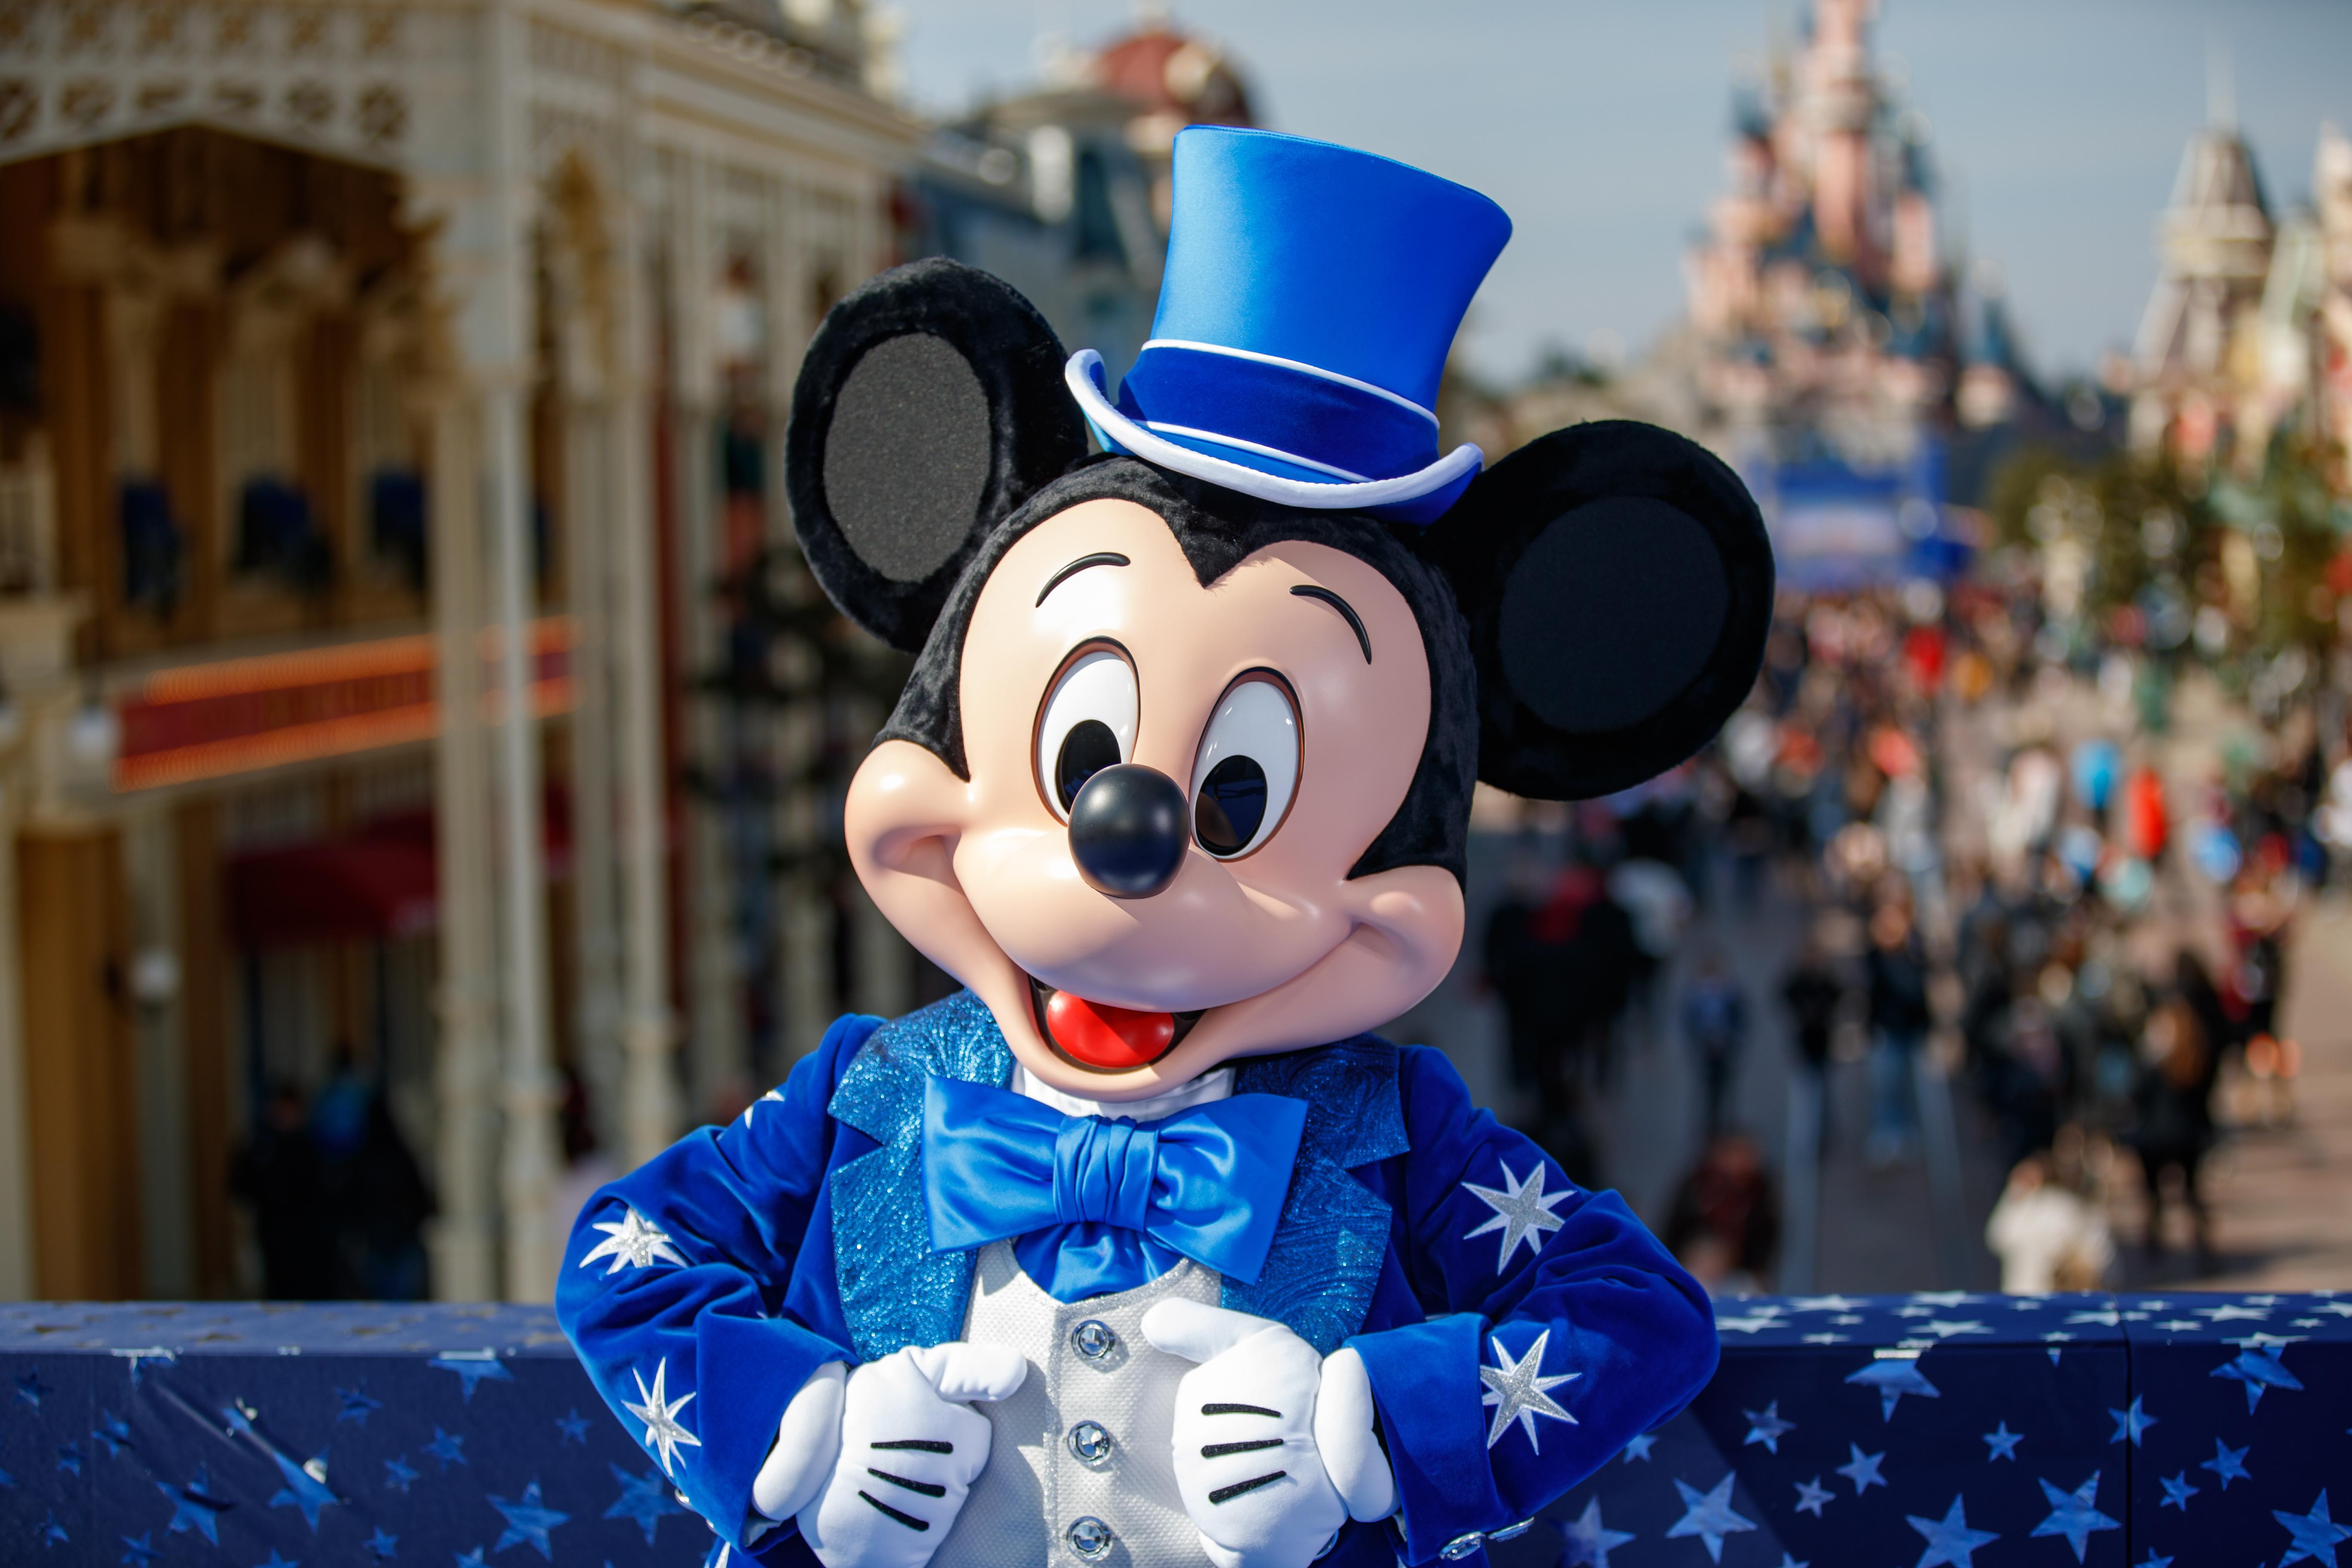 Autorisatie Delegatie satire Disney raakt mogelijk copyright kwijt op originele Mickey Mouse | Sterren |  Telegraaf.nl